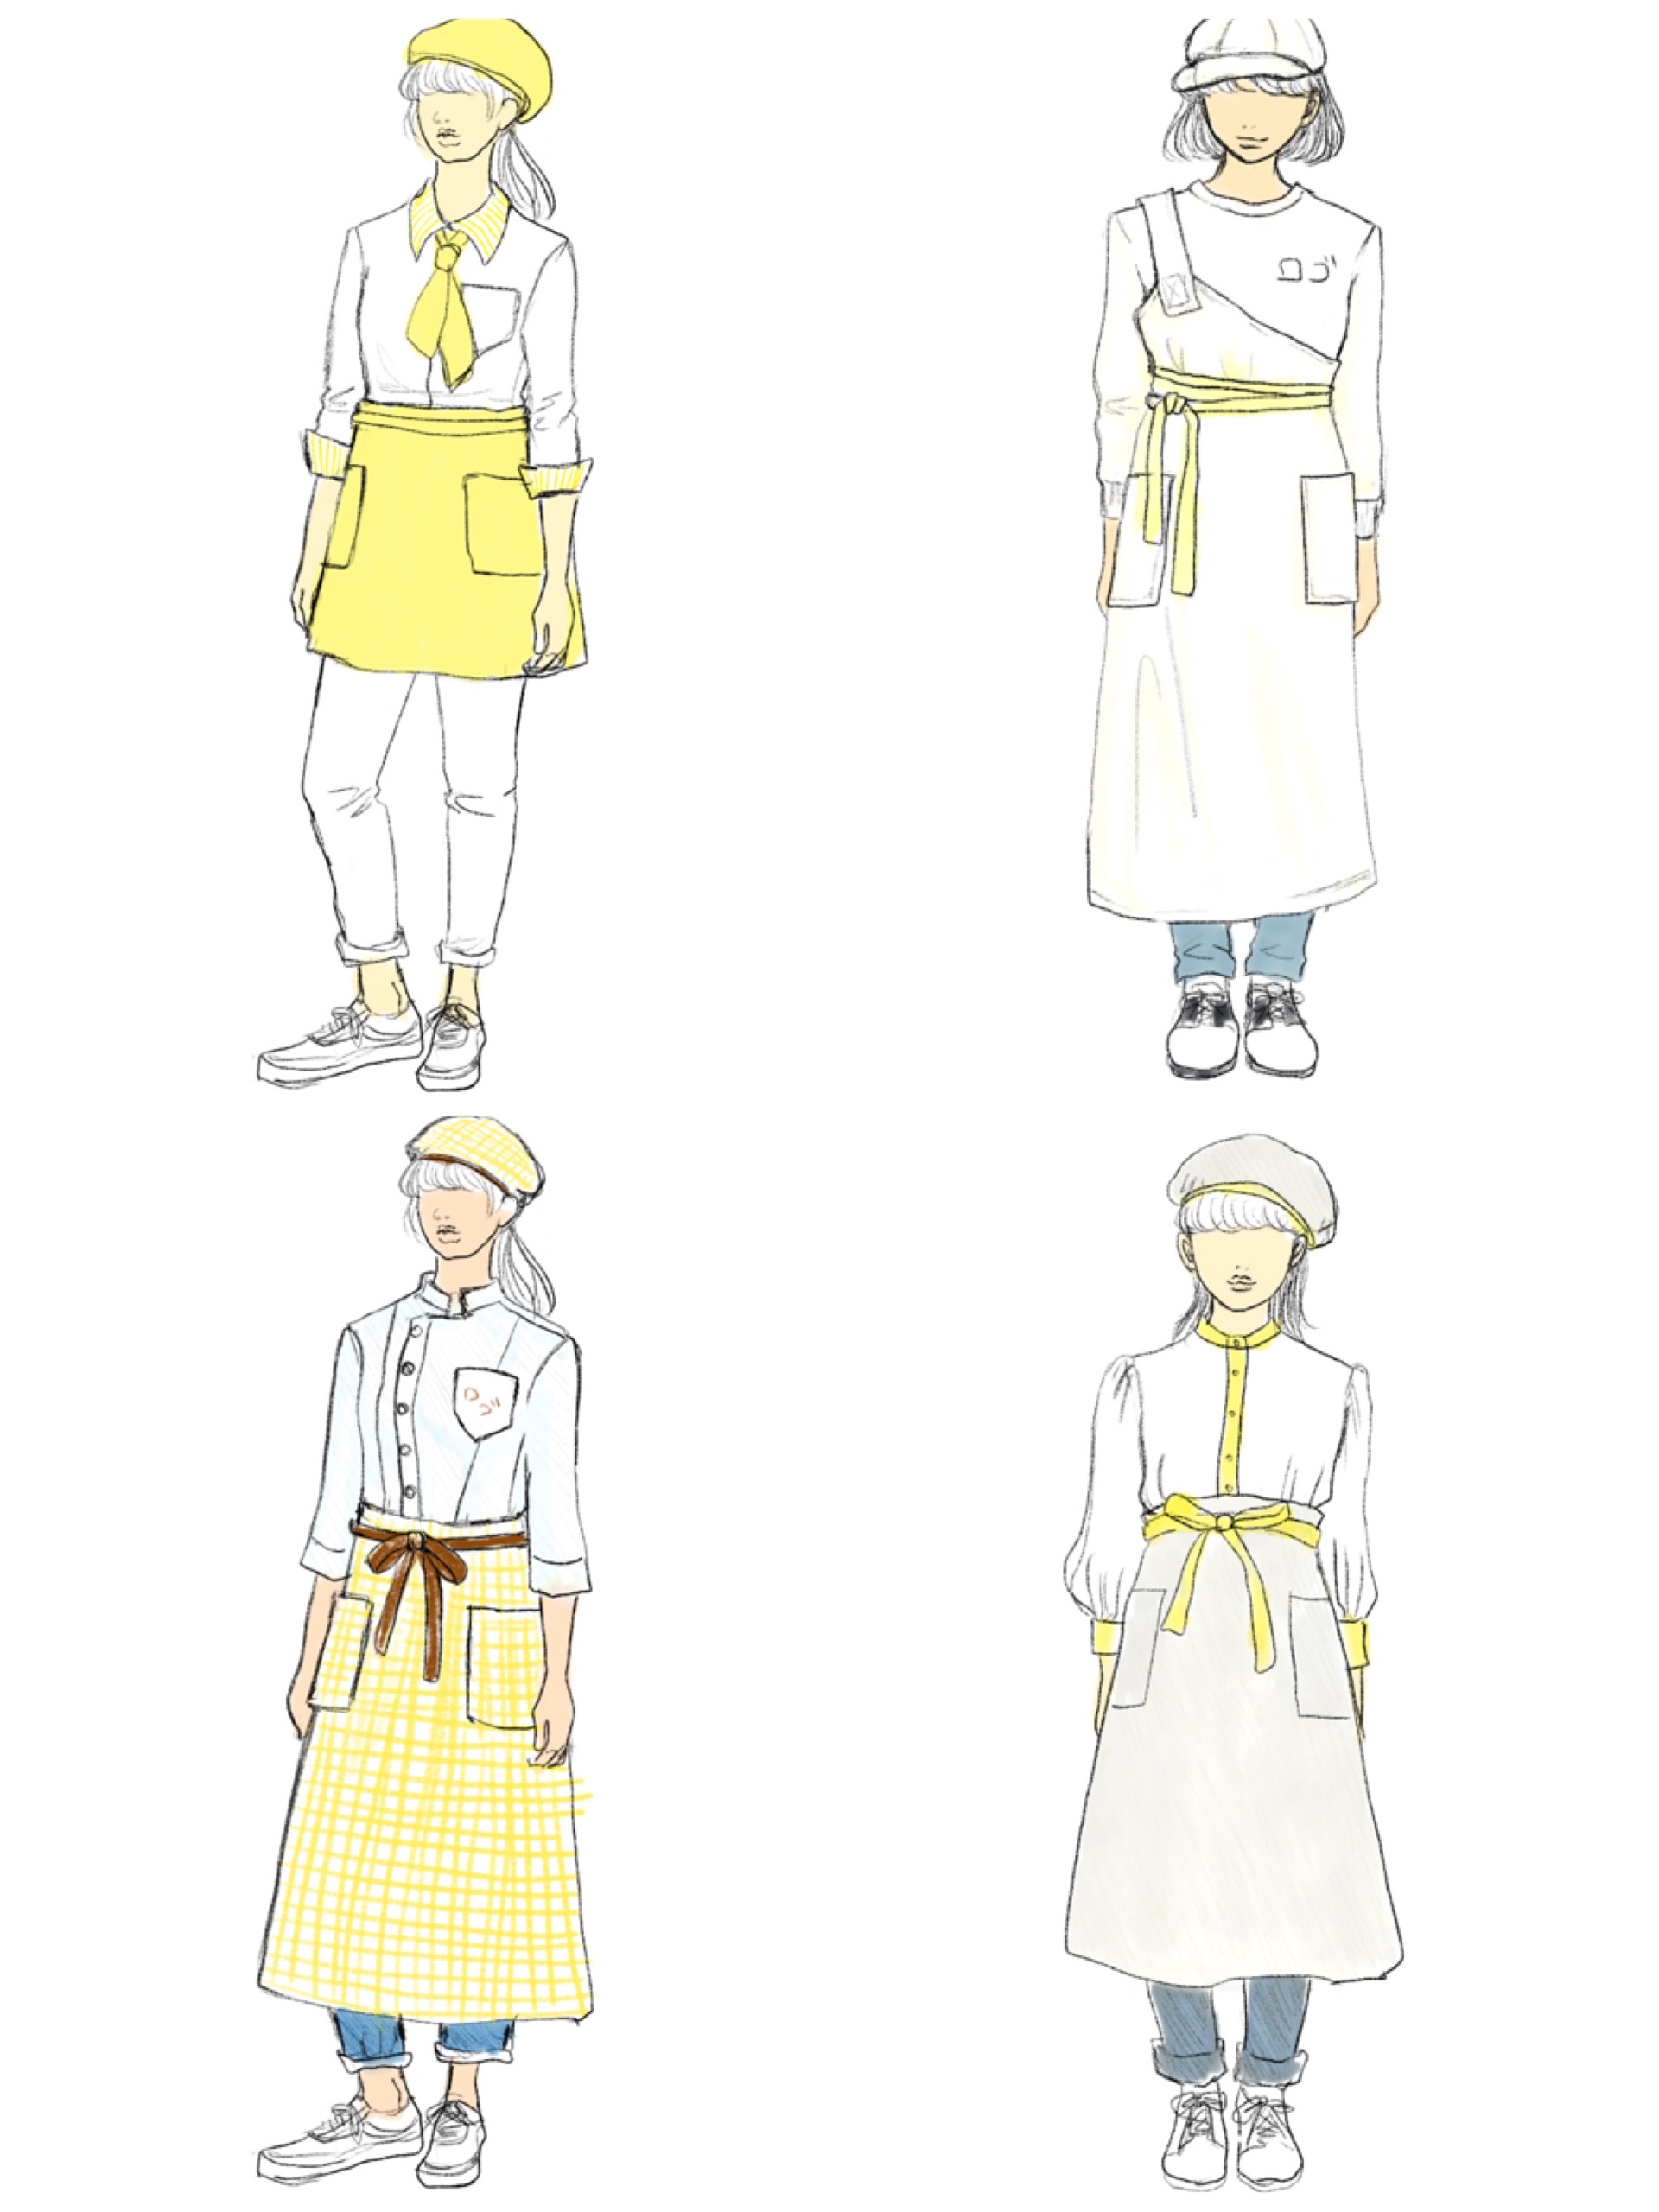 パン屋さんの制服デザインのお仕事をいただいた時の話 ファッションイラストの描き方